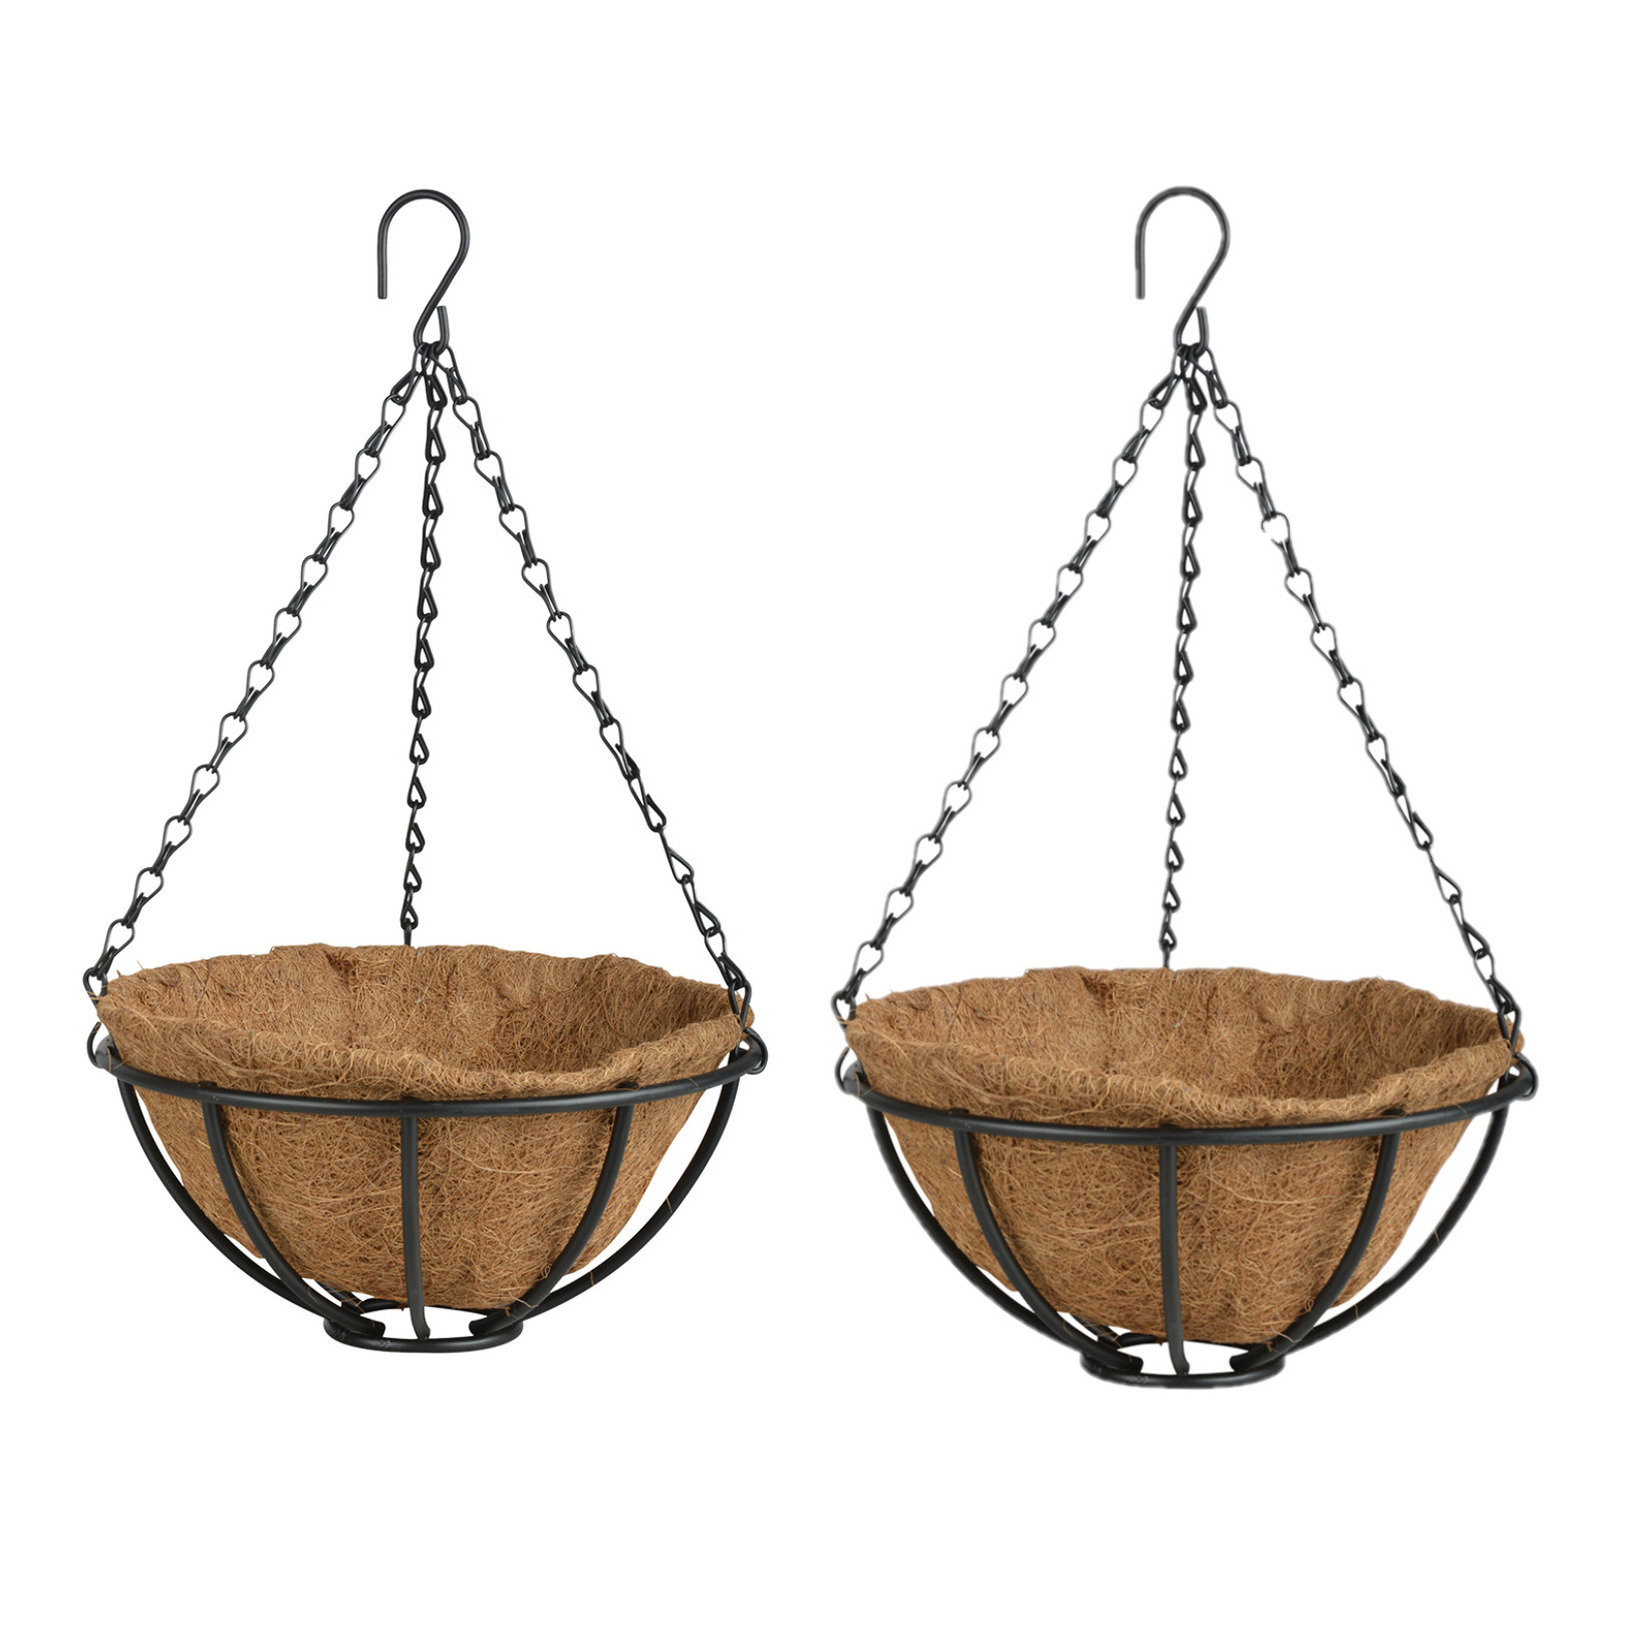 2x stuks metalen hanging baskets-plantenbakken met ketting 25 cm inclusief kokosinlegvel